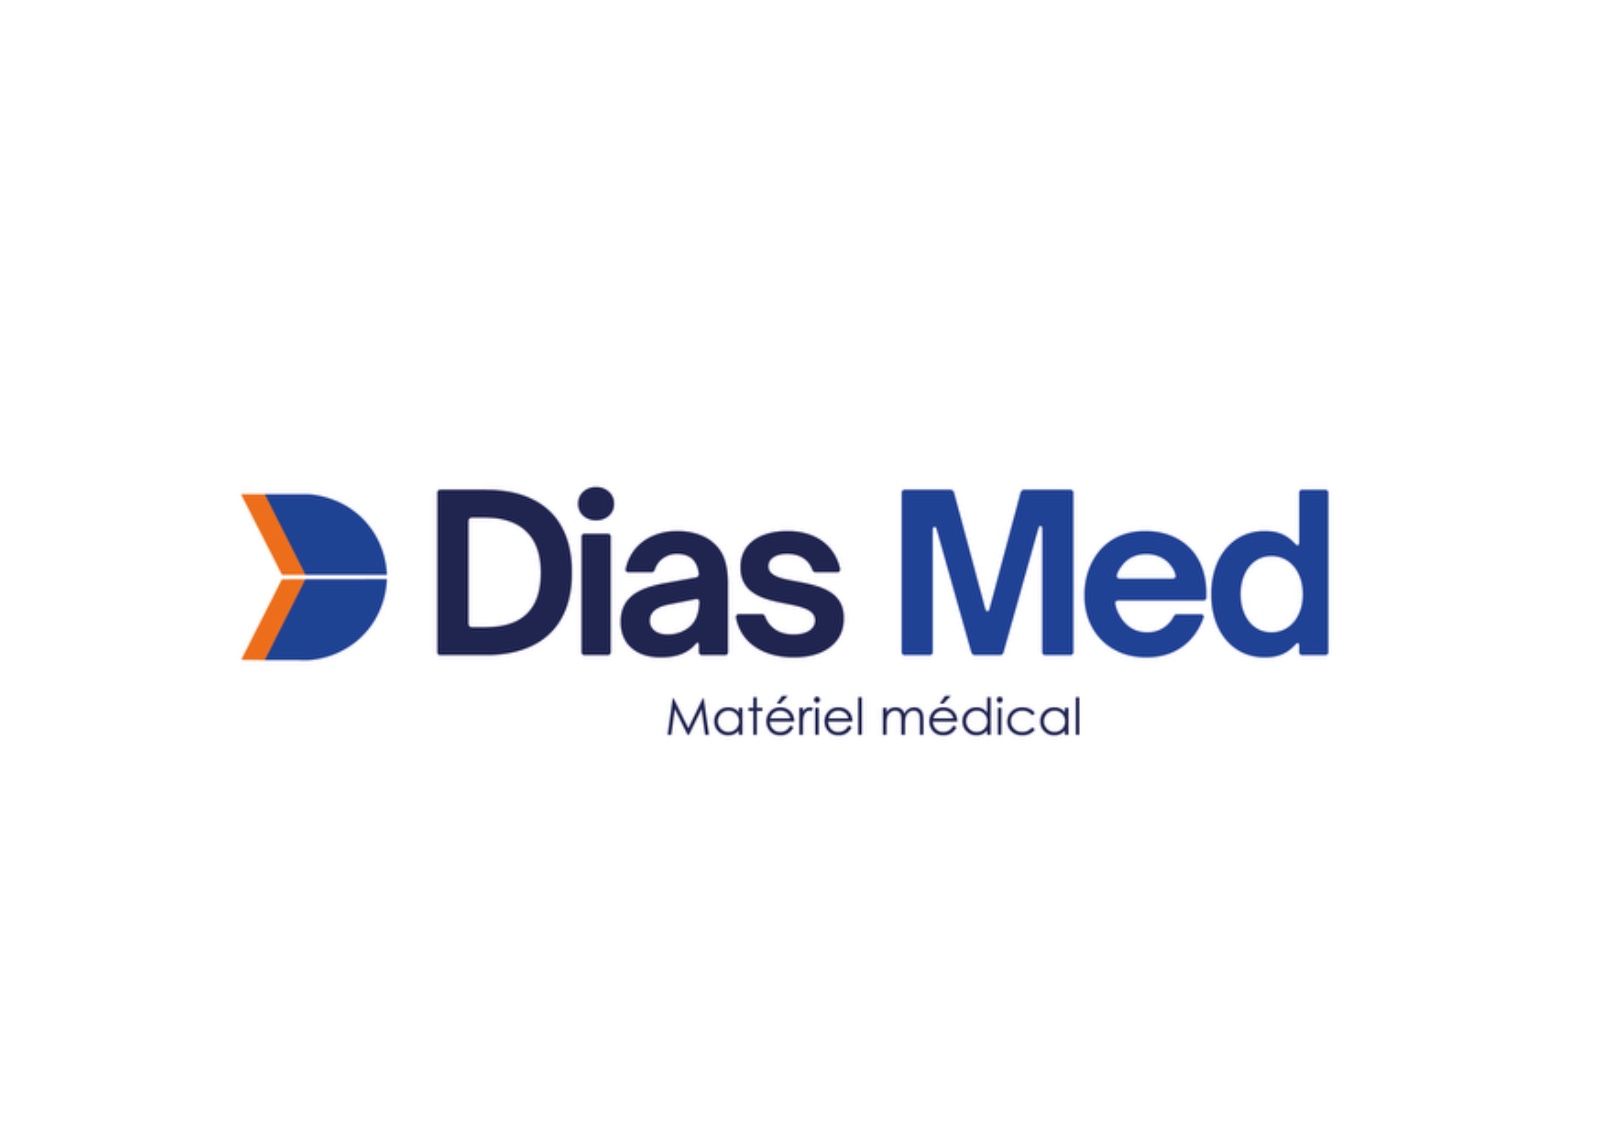 Dias Med